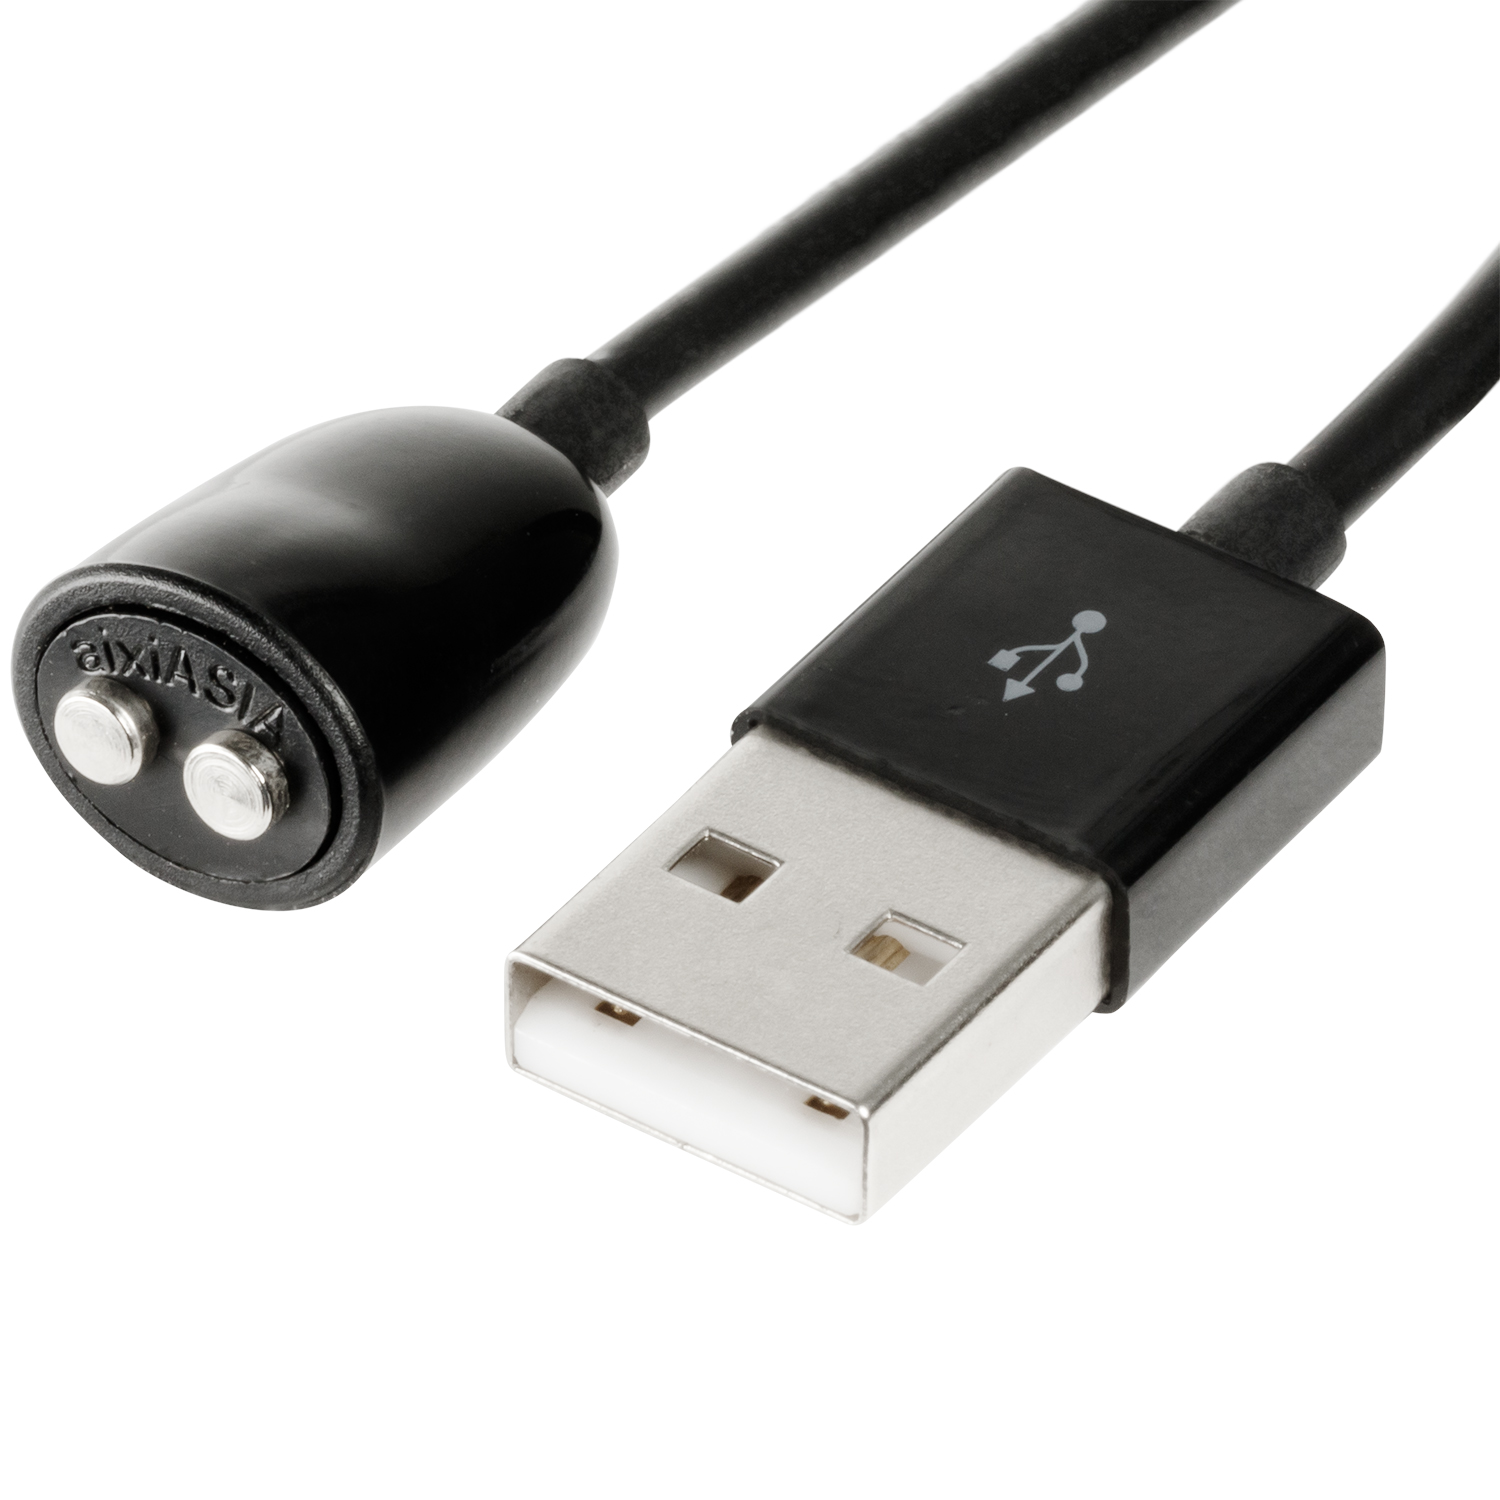 Sinful USB-laddare M2 - Svart